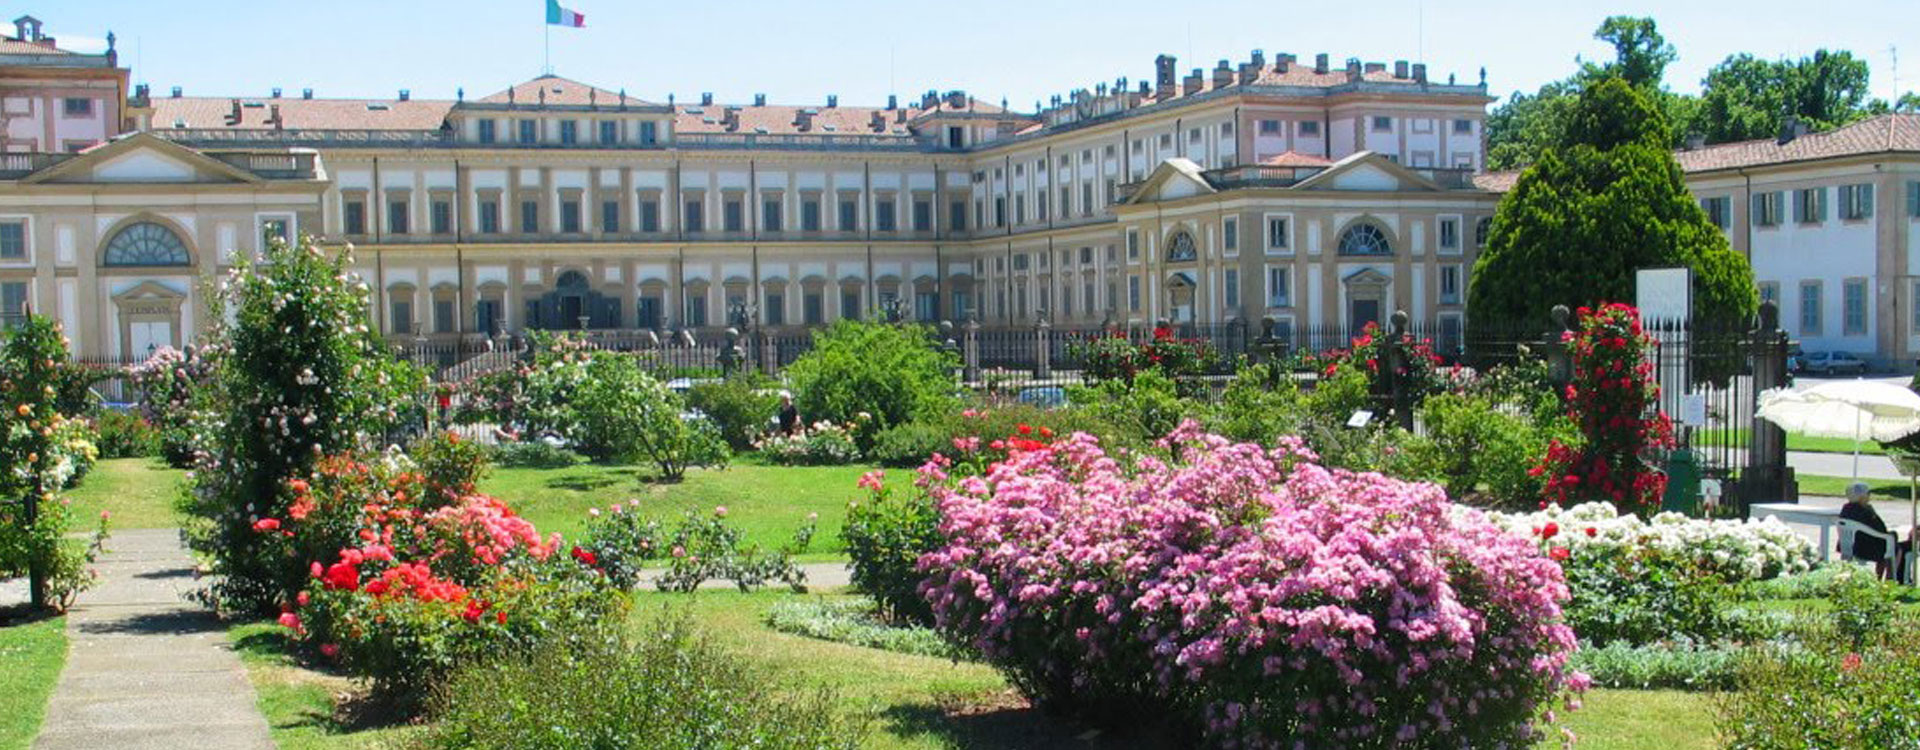 Cover Villa Reale di Monza